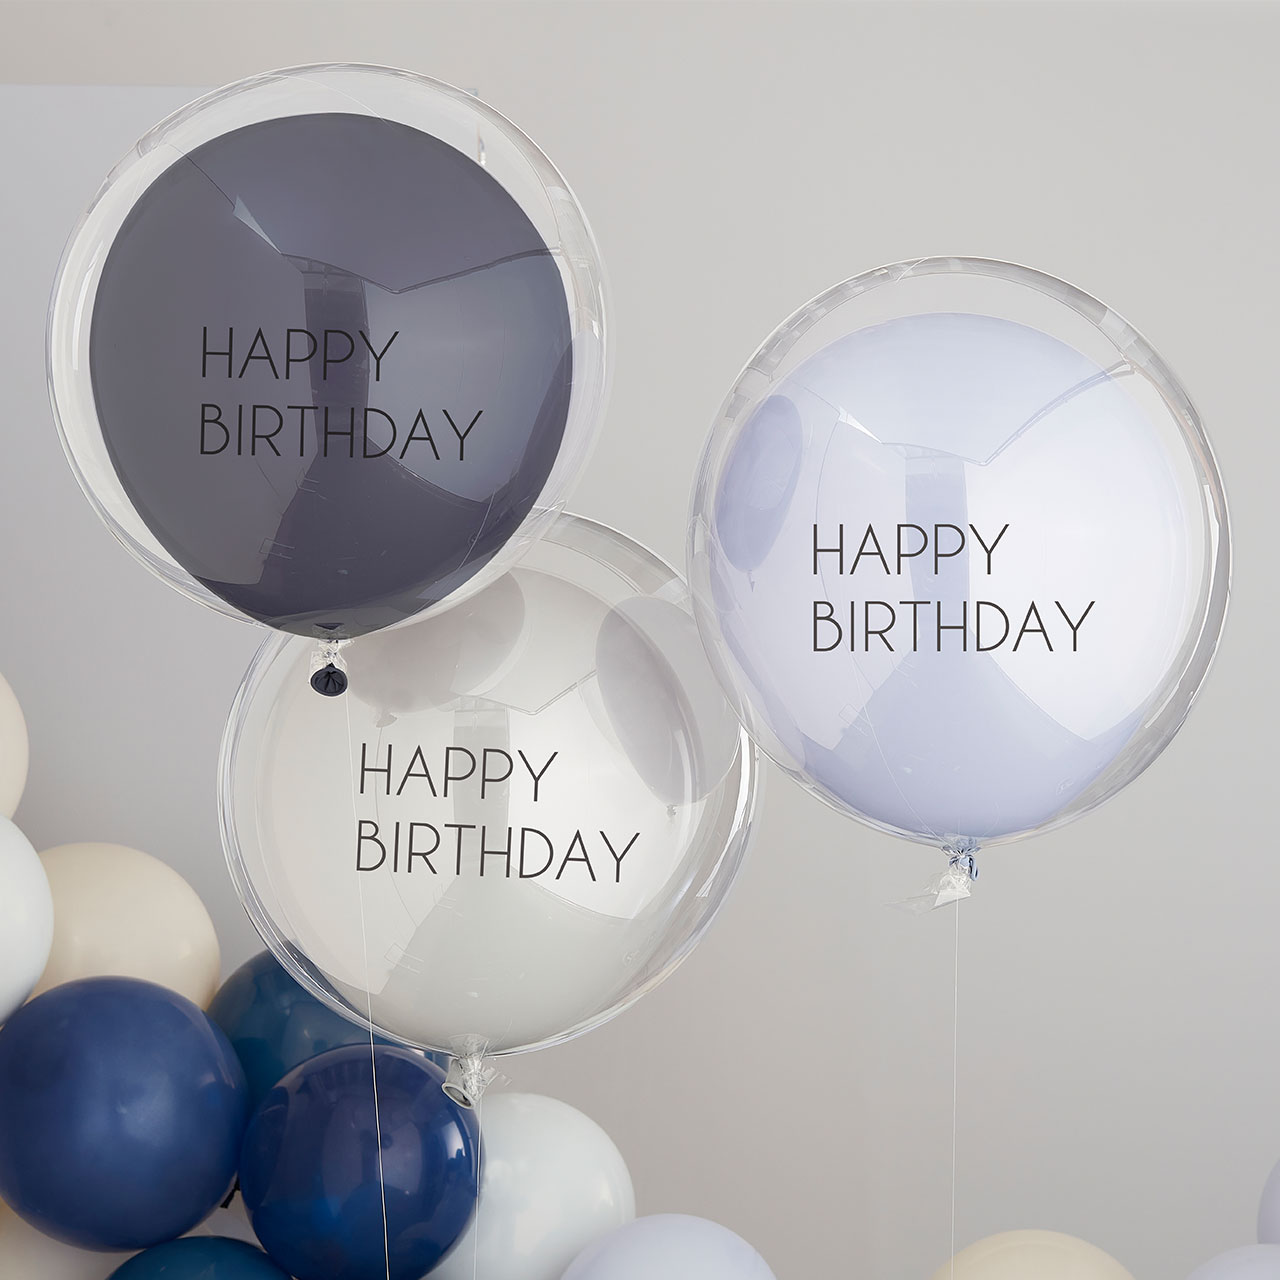 Ballons Blau & Grau Happy Birthday